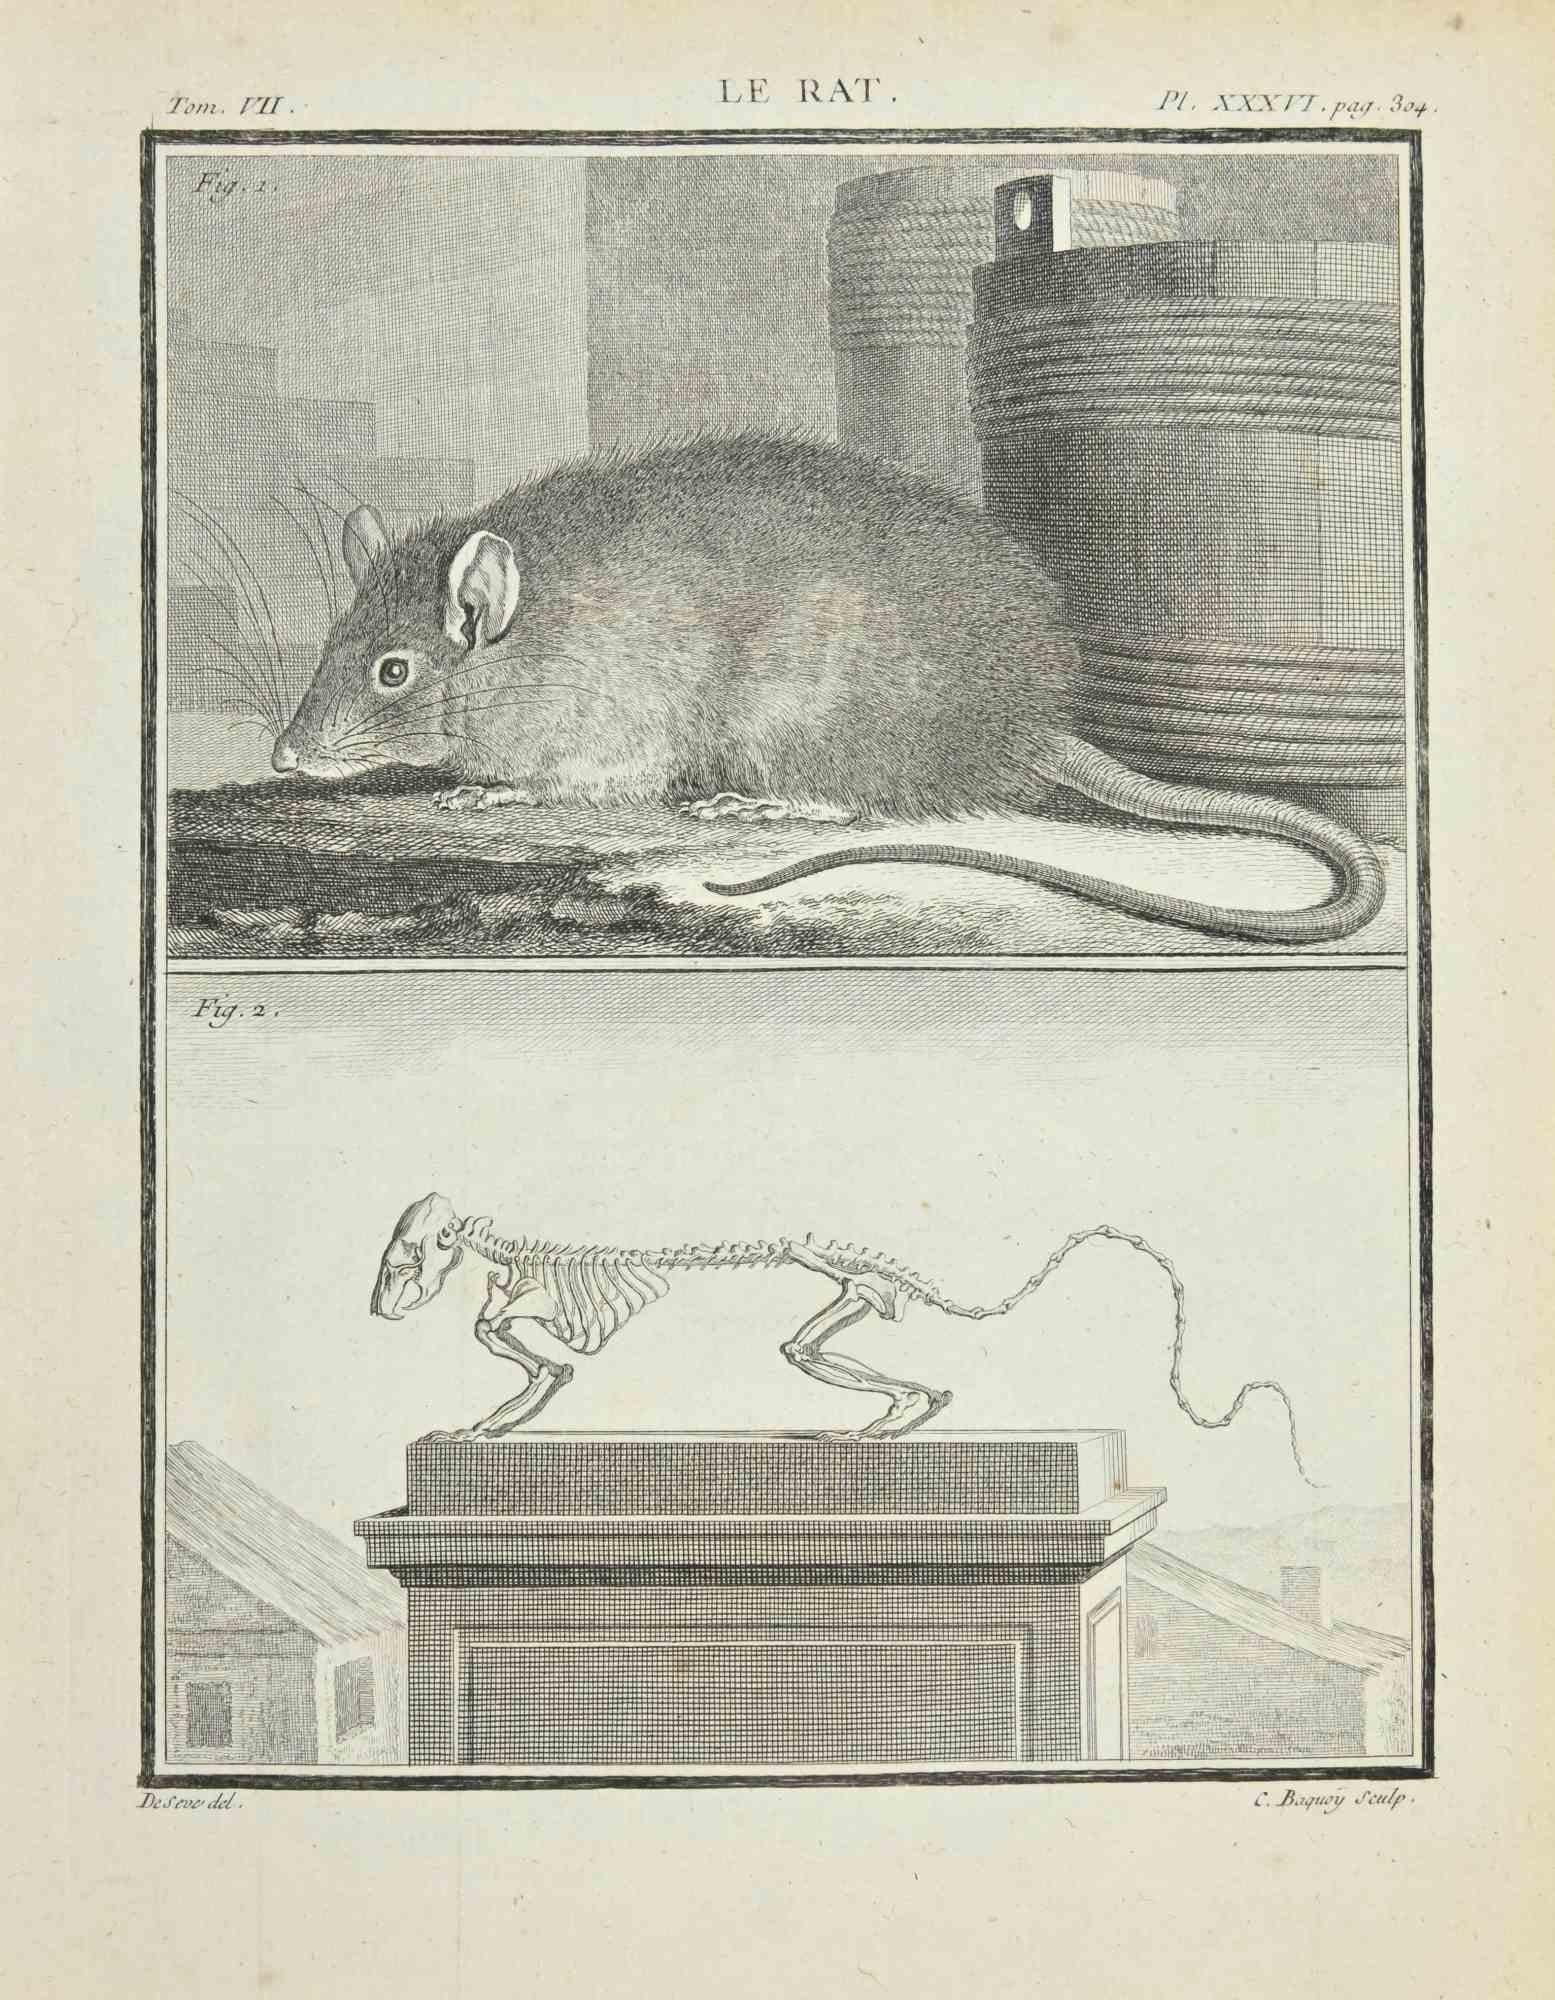 Le Rat - Gravure de Jacques Baron - 1771